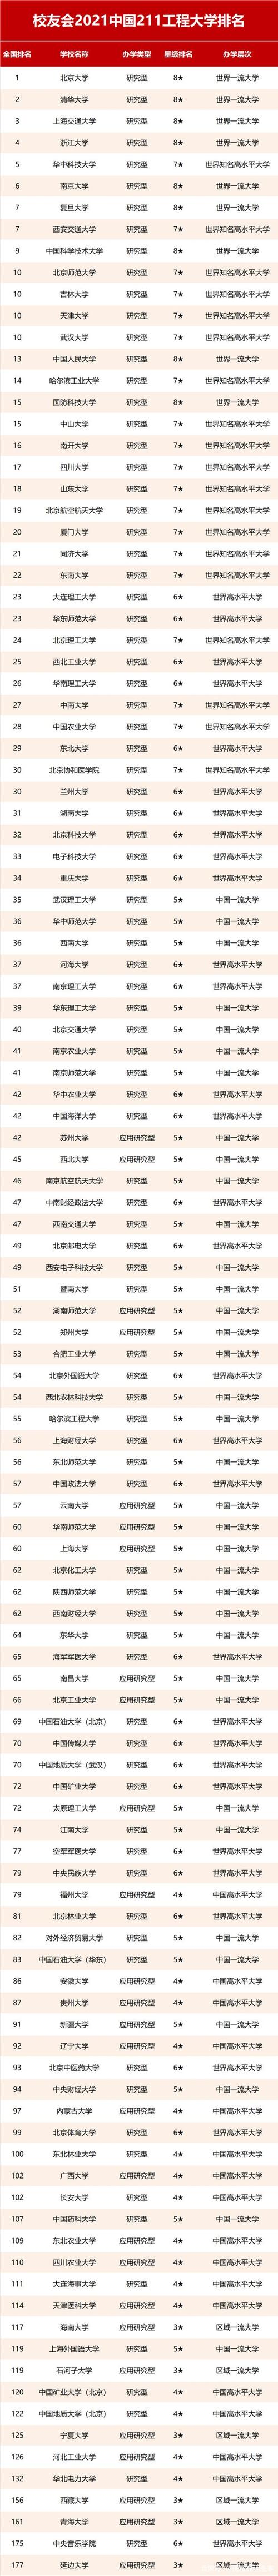 中国大学排名2012_中国大学排名最新排名表